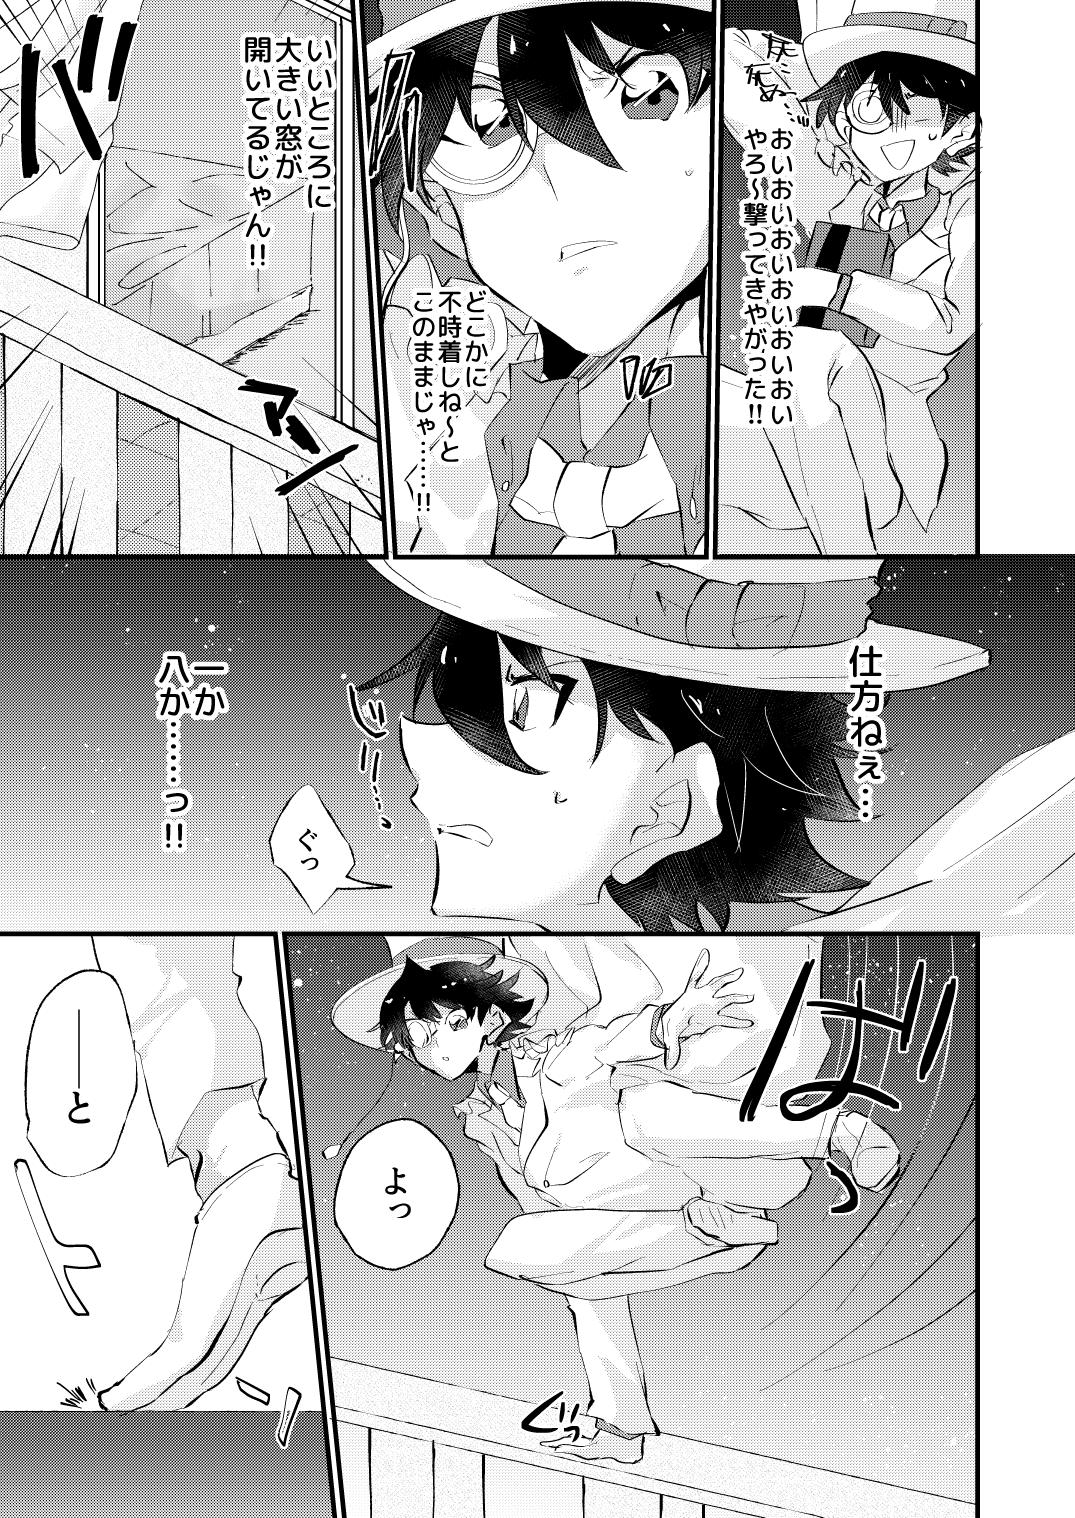 Rub [404] (Detective Conan) [Digital] - Detective conan | meitantei conan Gay Smoking - Page 5